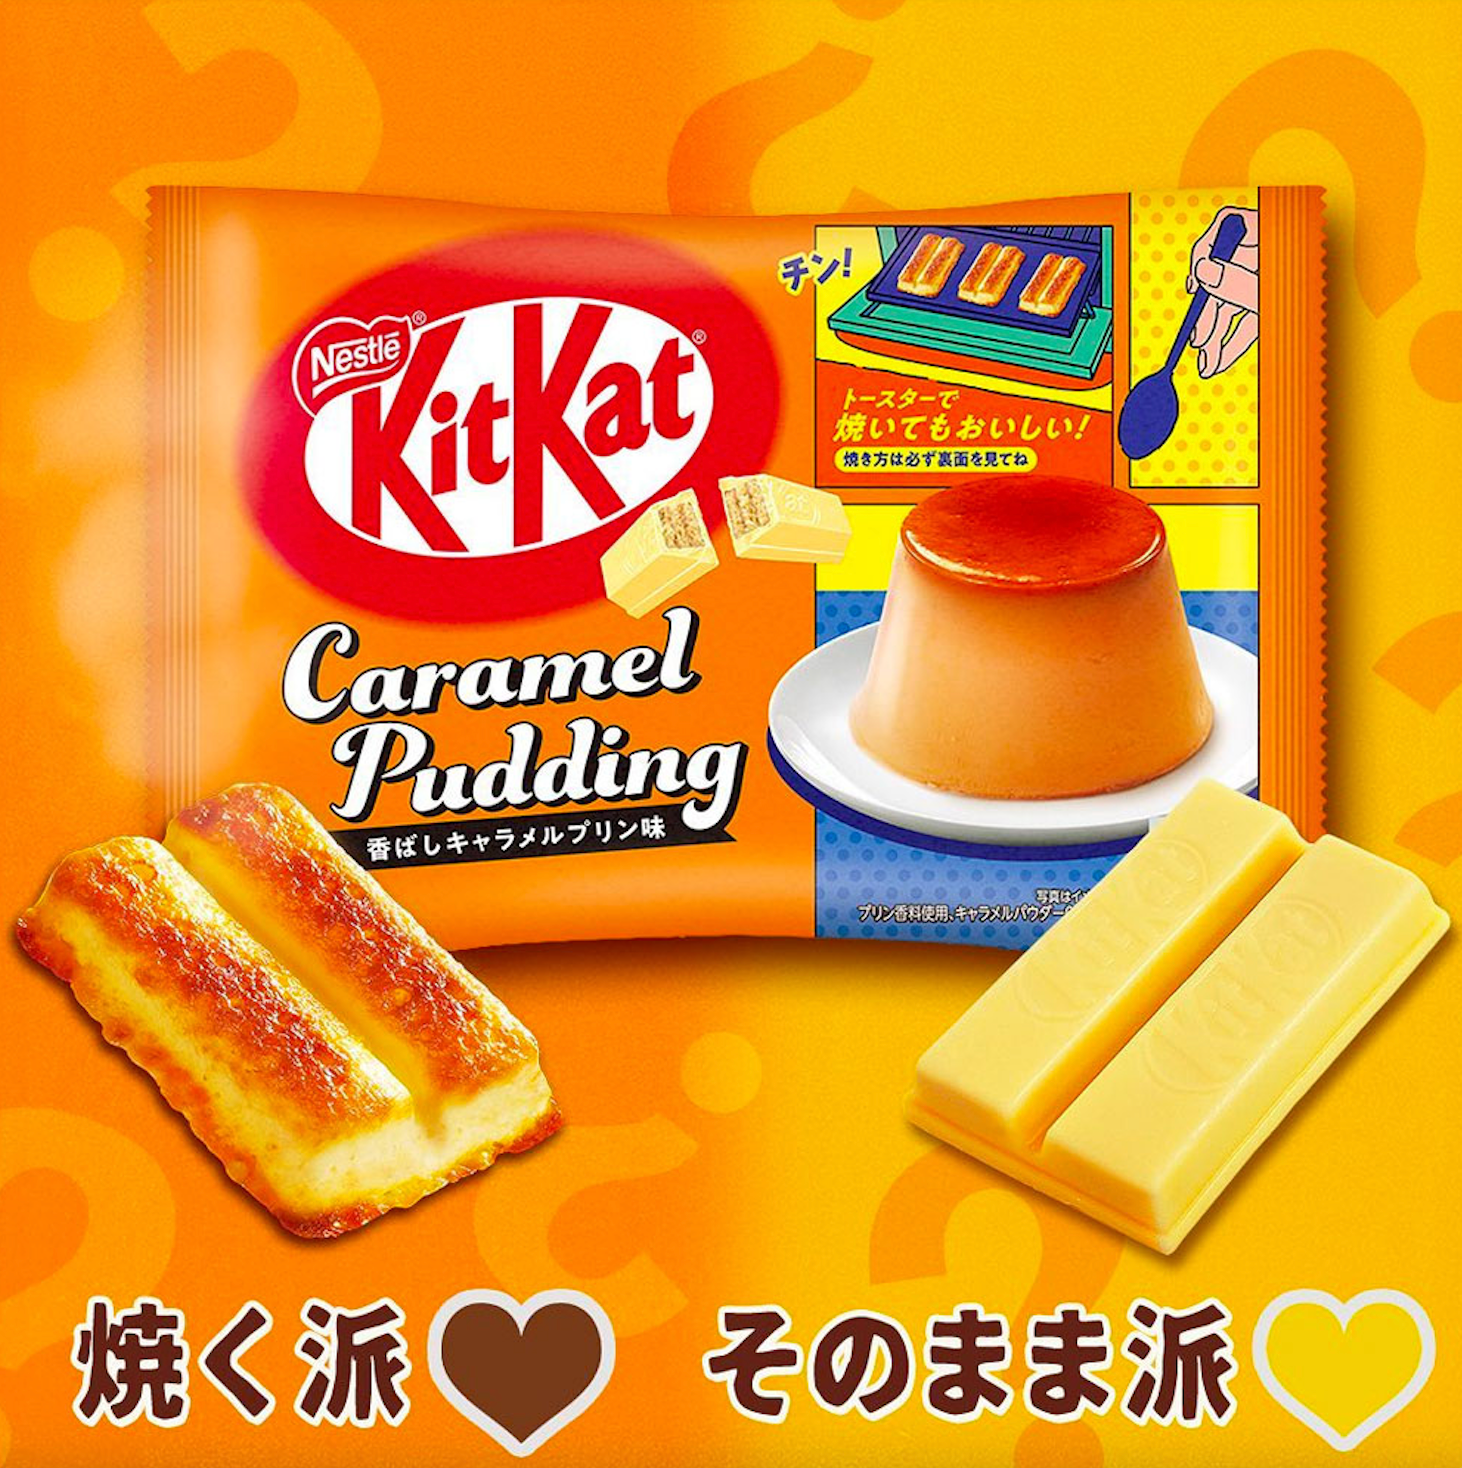 Kit Kat - Caramel Pudding - Chocolate Mini Bar - 116g (Japan)